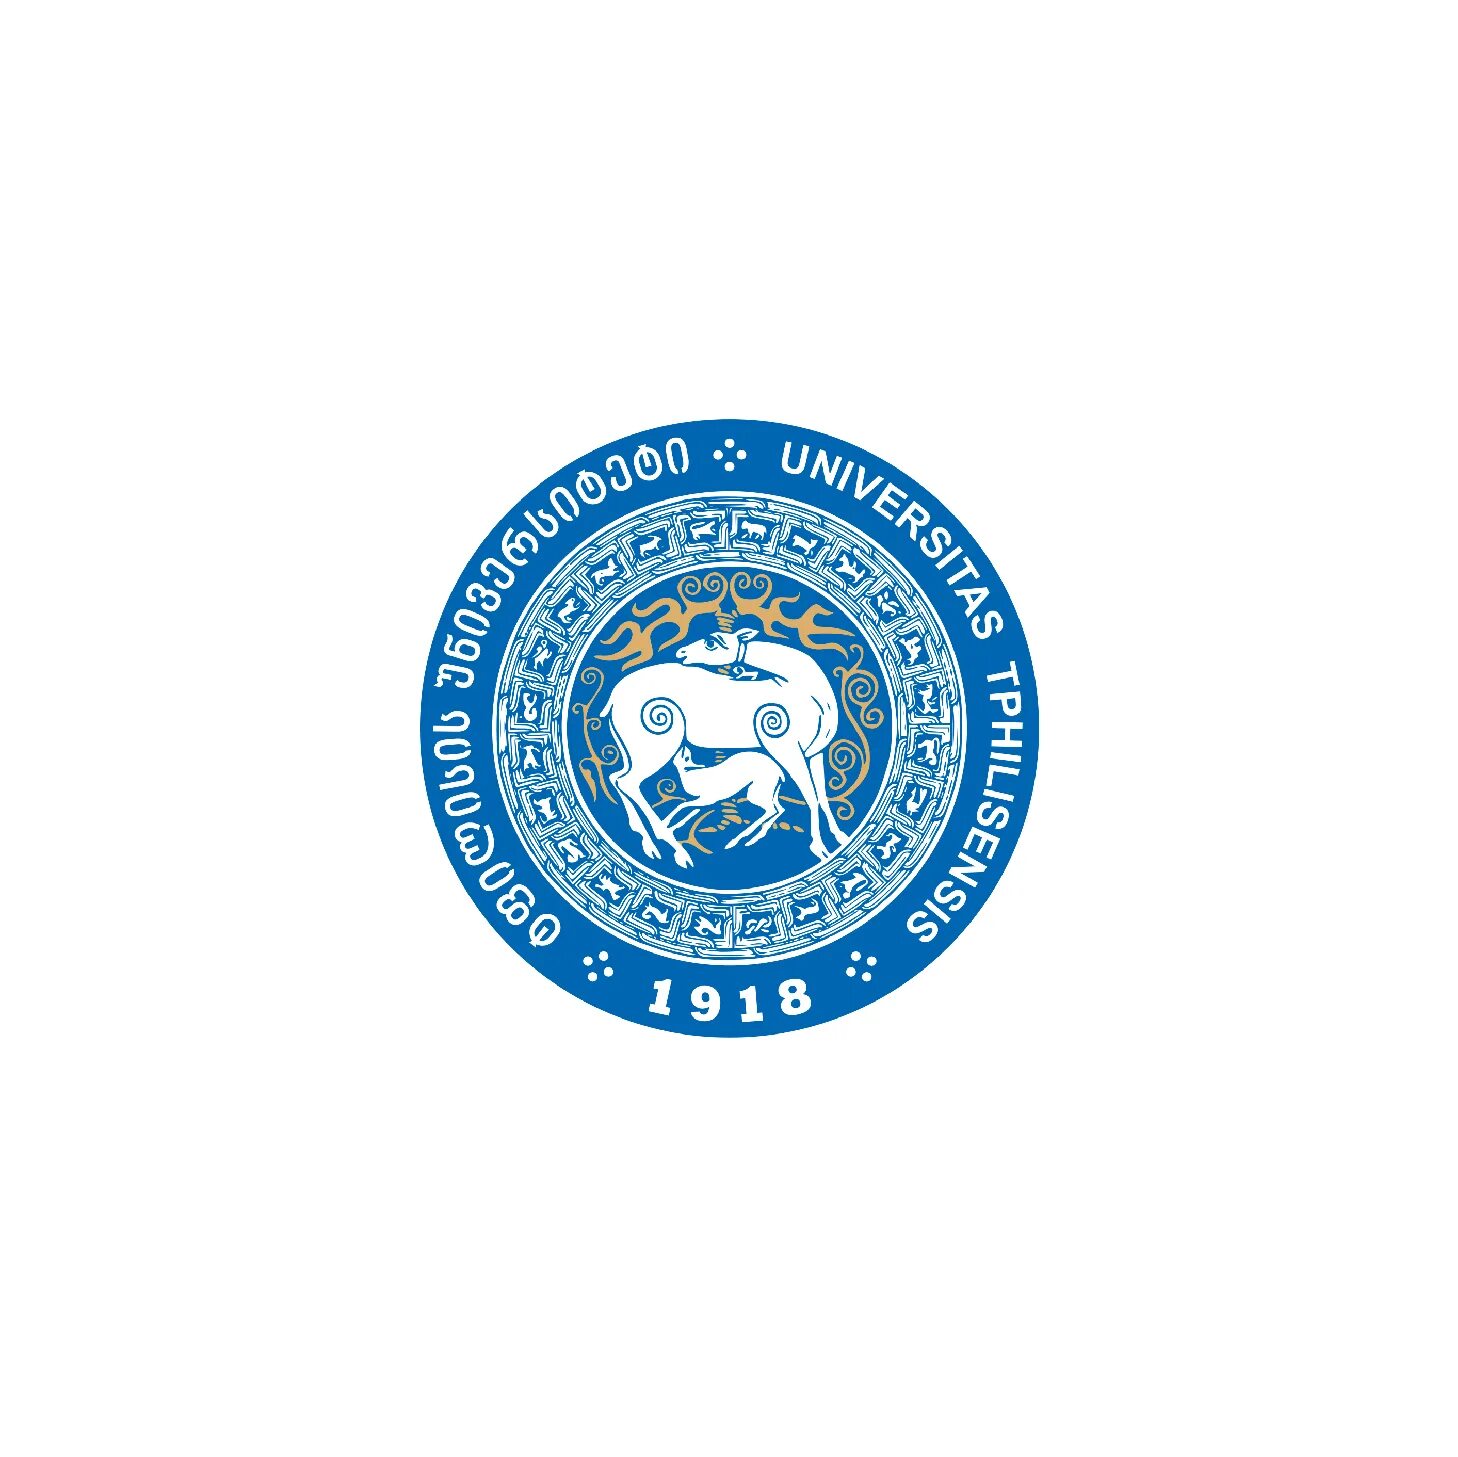 Tsu университет. Тбилисский государственный университет лого. Tsu logo. Ivane djavakhishvili Tbilisi State University логотип.